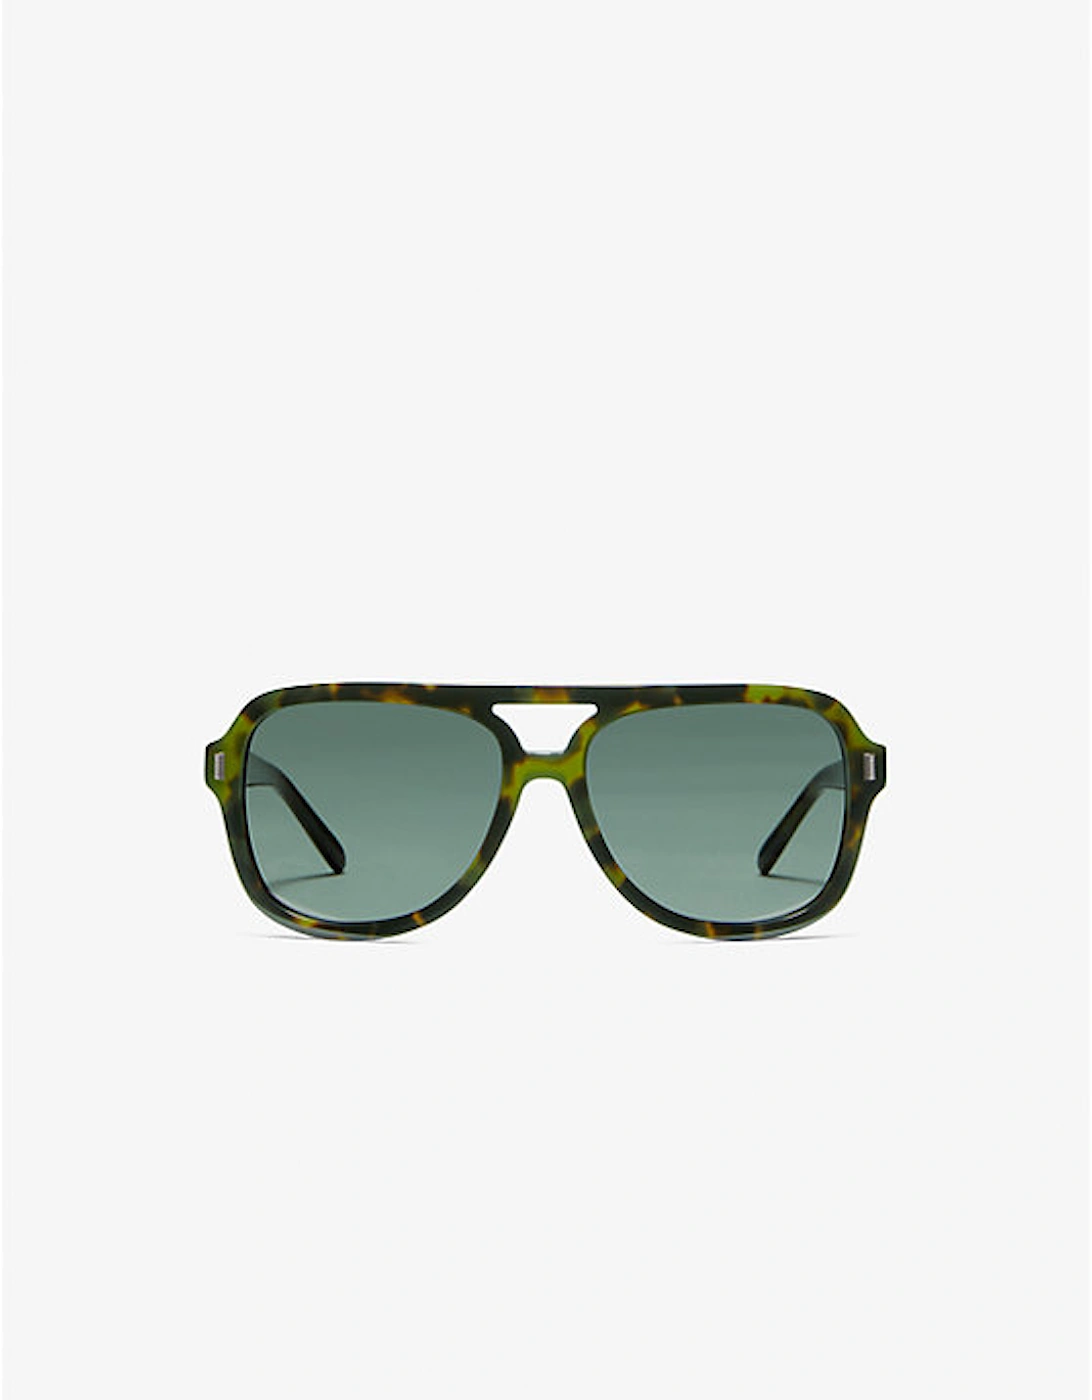 Durango Sunglasses, 2 of 1